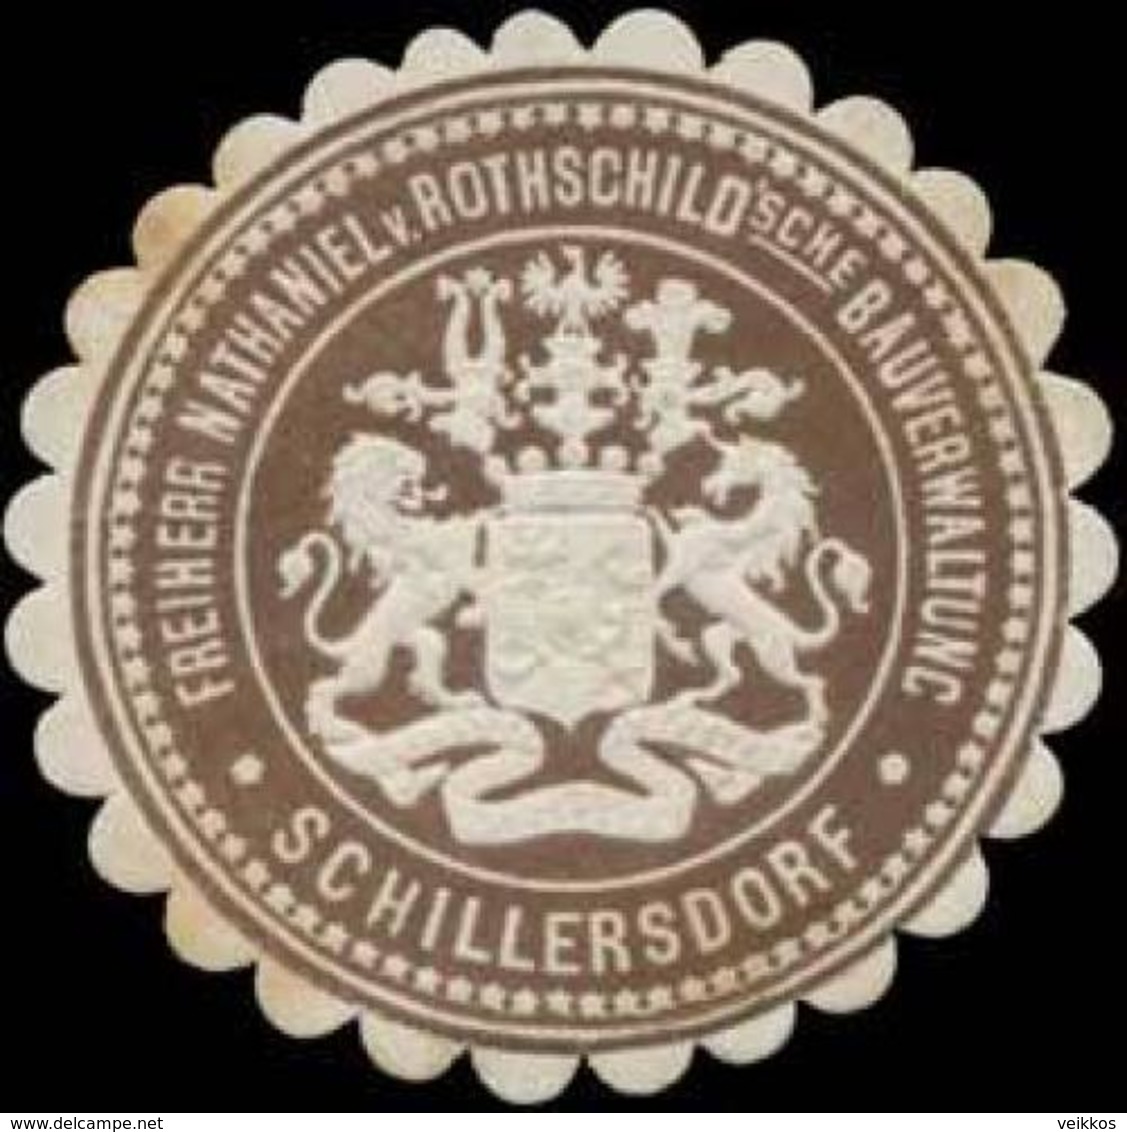 Schillersdorf: Freiherr Nathaniel Von Rothschildsche Bauverwaltung Schillersdorf Siegelmarke - Cinderellas